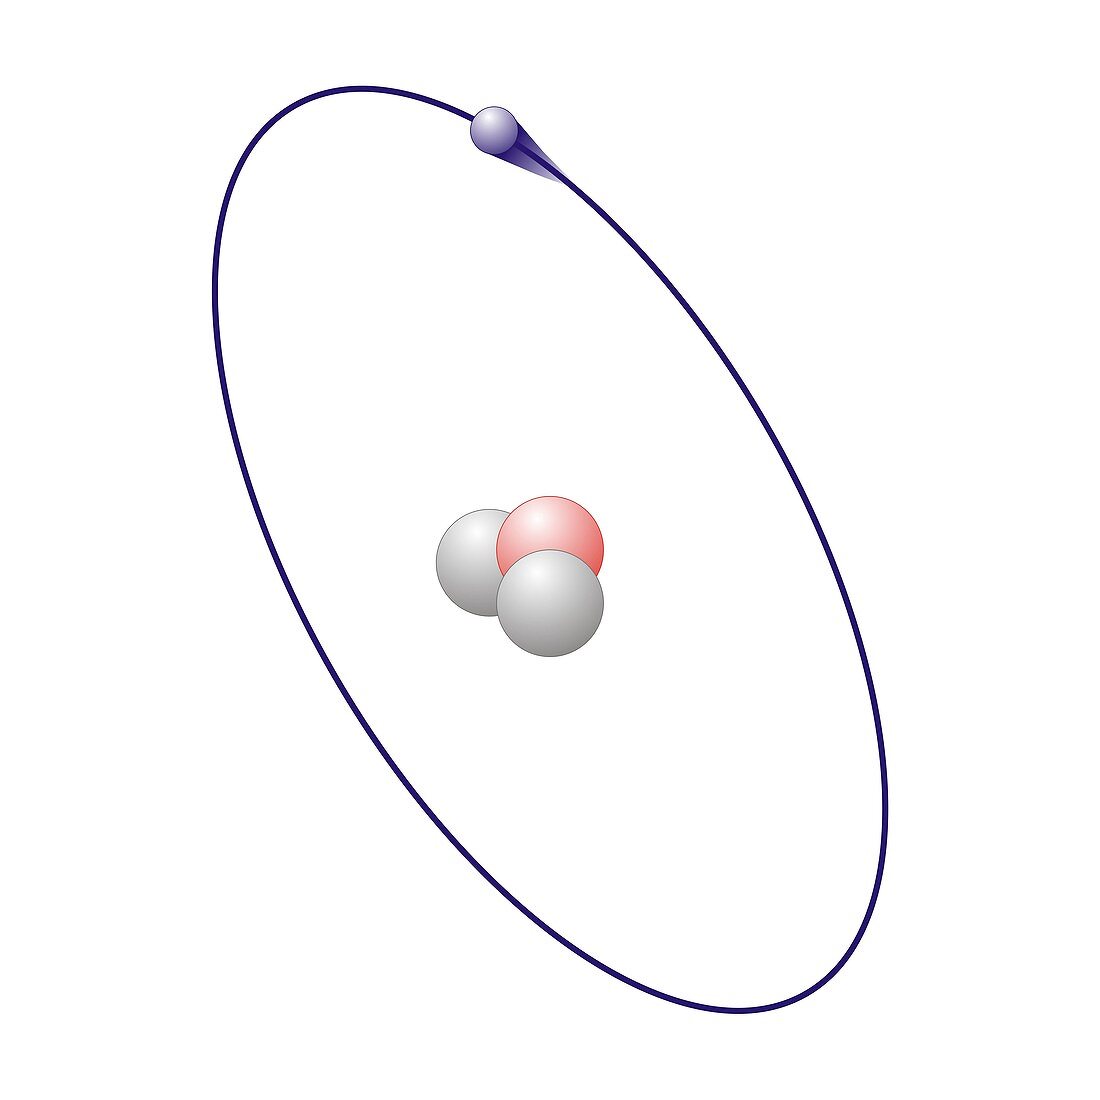 Tritium,atomic model